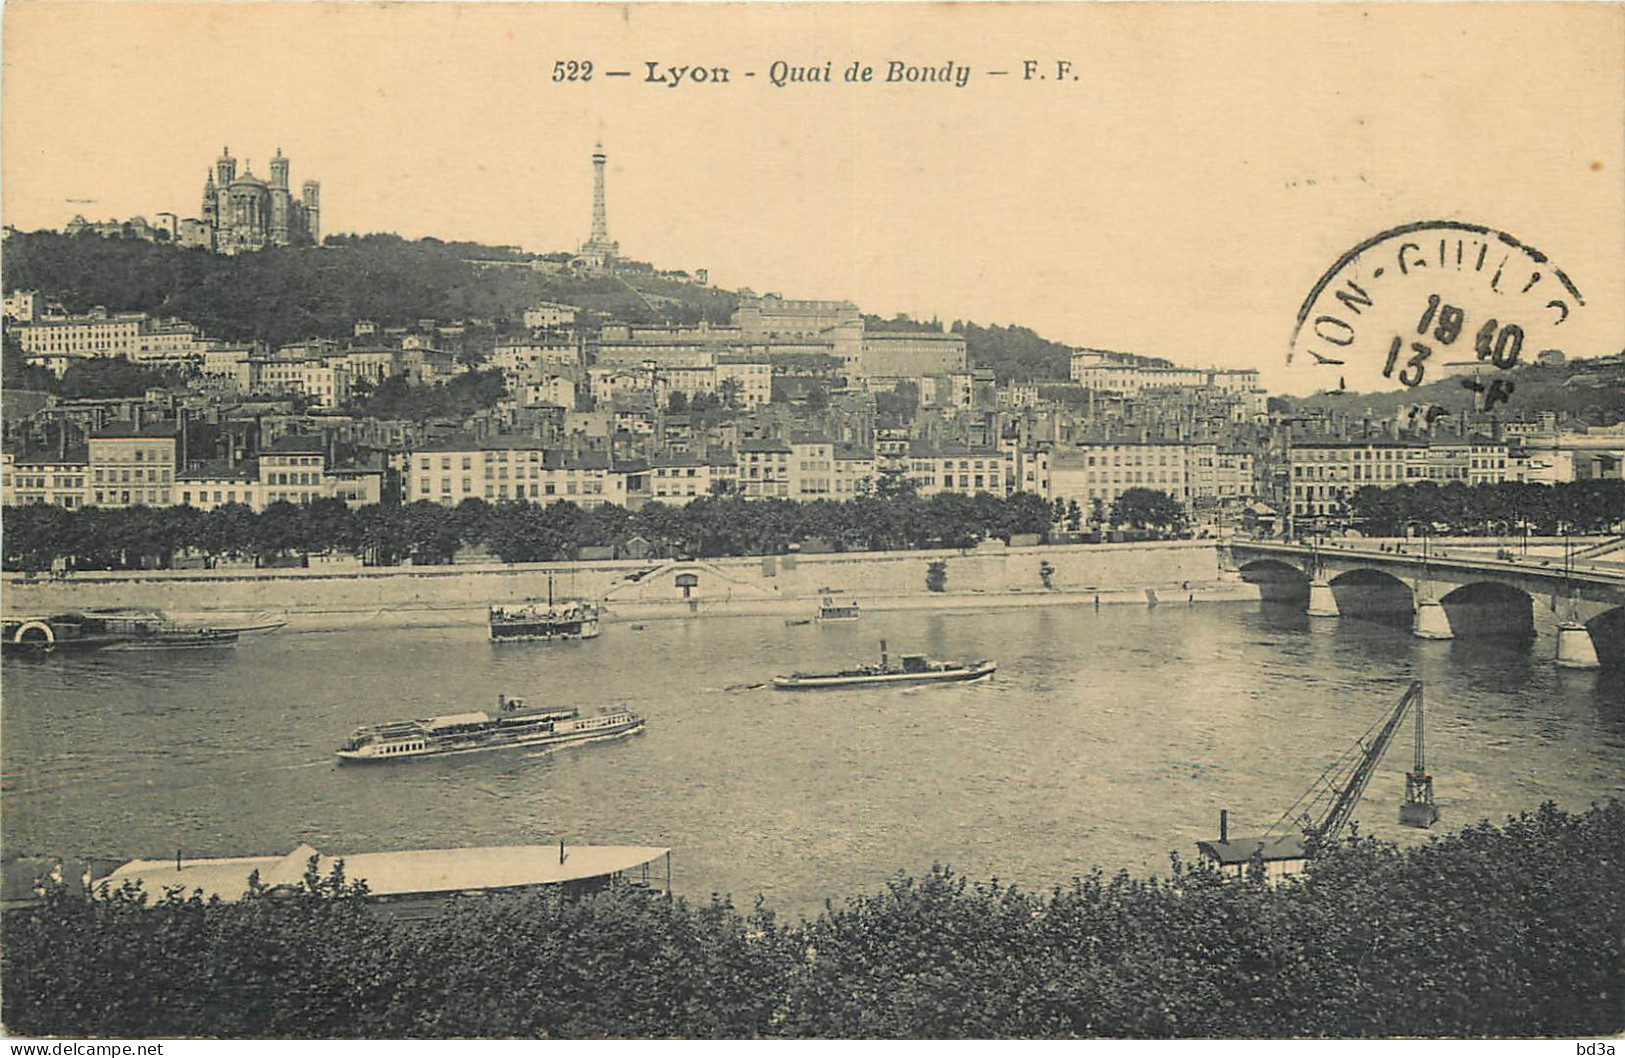  69  LYON  Quai De Bondy - Lyon 5